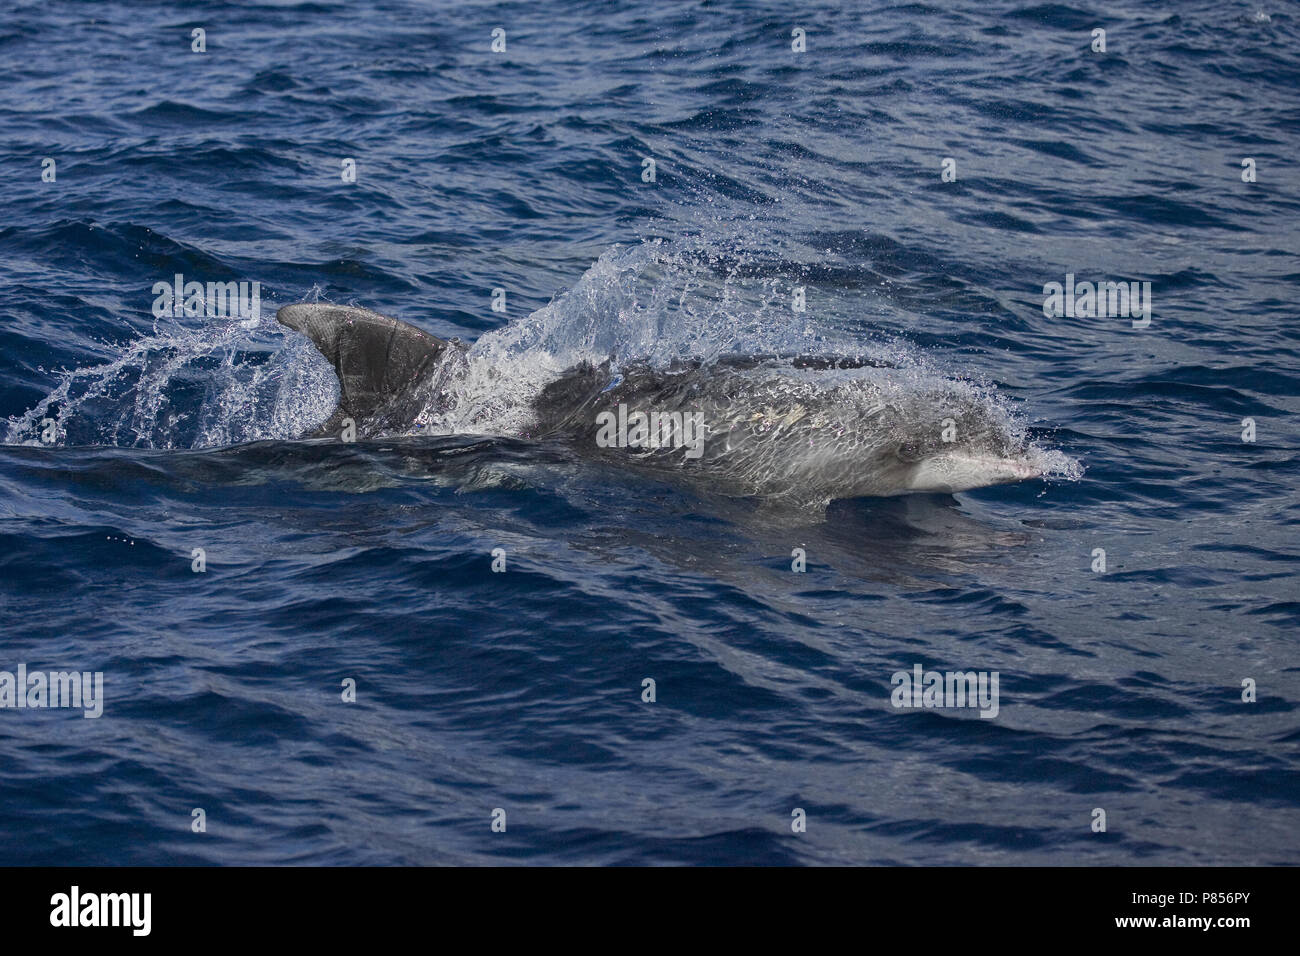 Common Bottlenose Dolphin swimming; Tuimelaar zwemmend Stock Photo